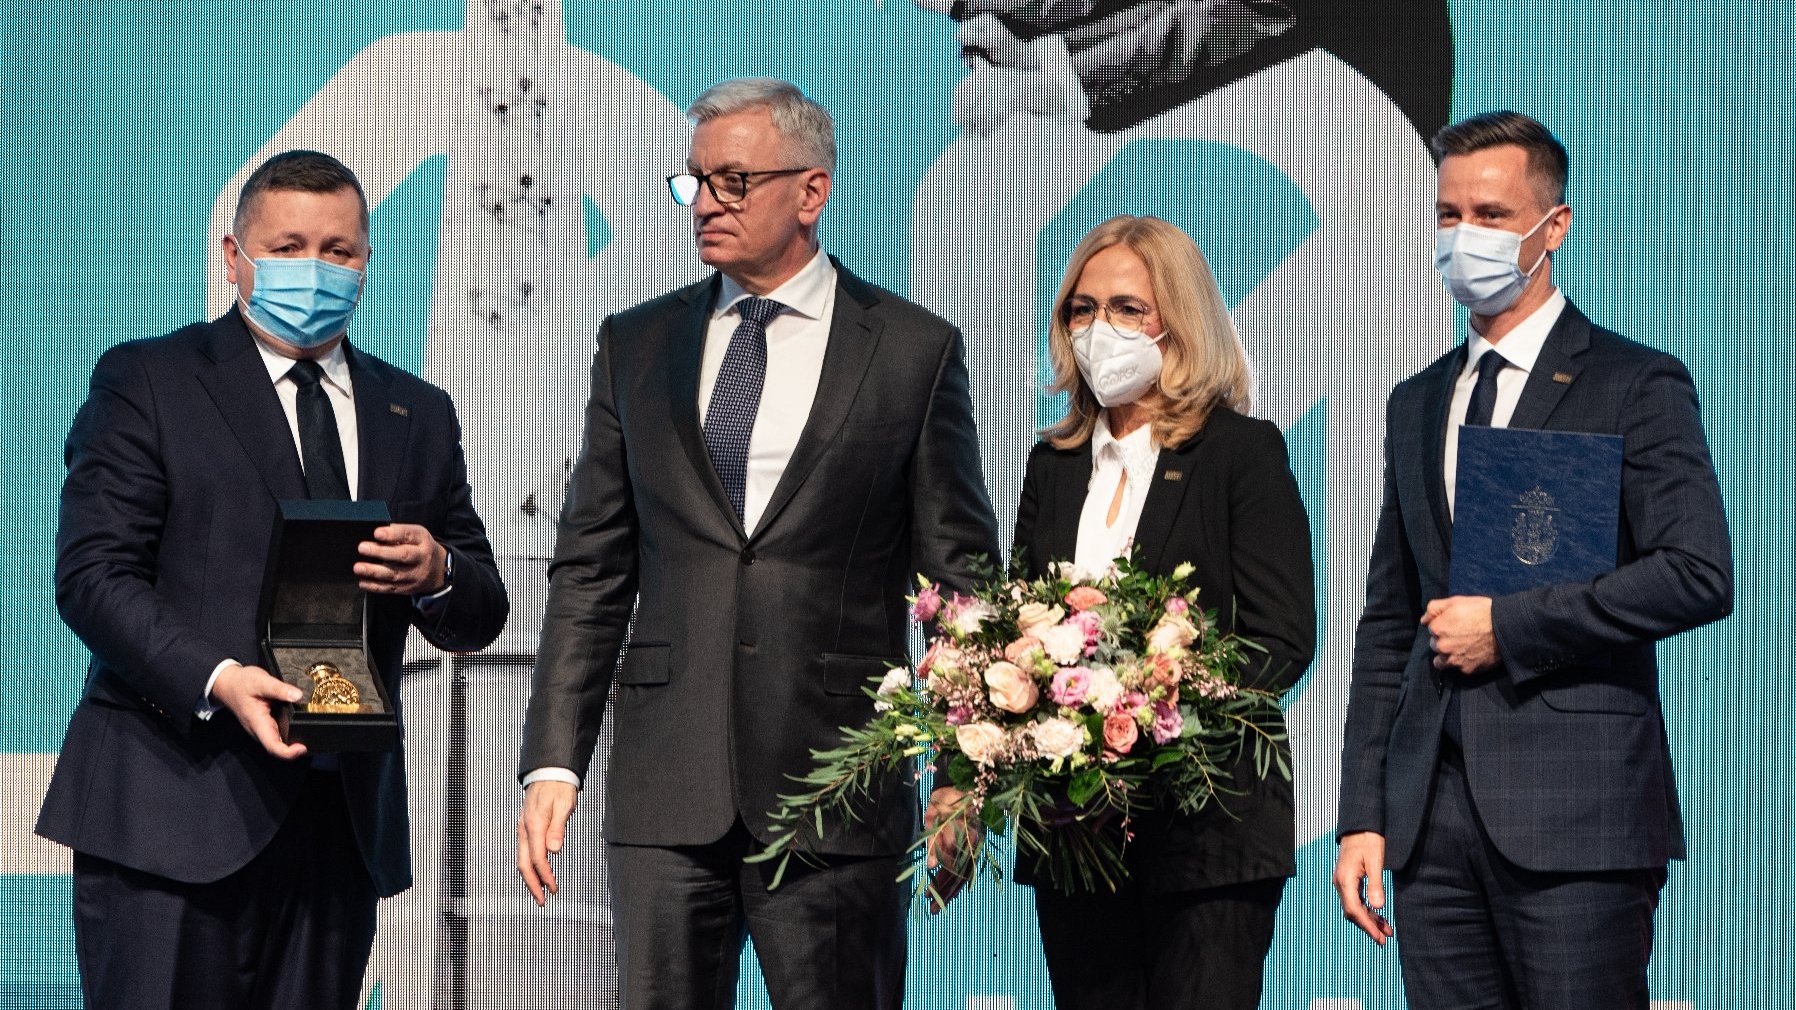 Jacek Jaśkowiak prezydent Poznania stojący obok Tomasza Kobierskiego prezesa Grupy MTP który trzyma w rękach Złotą Pieczęć. Obok prezydenta kobieta w maseczce trzymająca bukiet kwiatów, a obok niej mężczyzna w maseczce z dyplomem